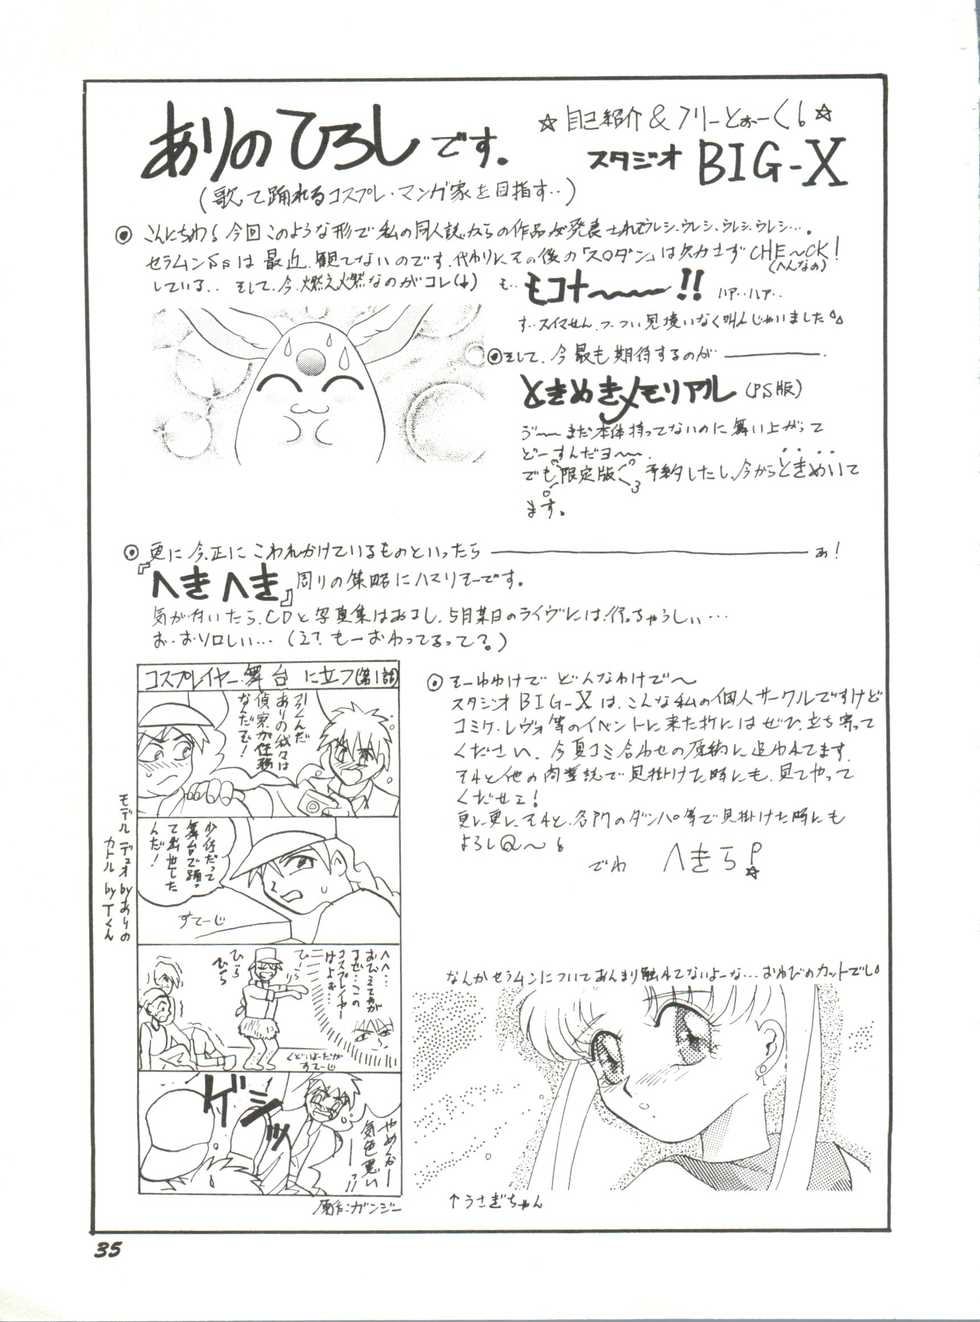 [Anthology] Bishoujo Doujinshi Anthology 12 - Moon Paradise 7 Tsuki no Rakuen (Bishoujo Senshi Sailor Moon) - Page 40